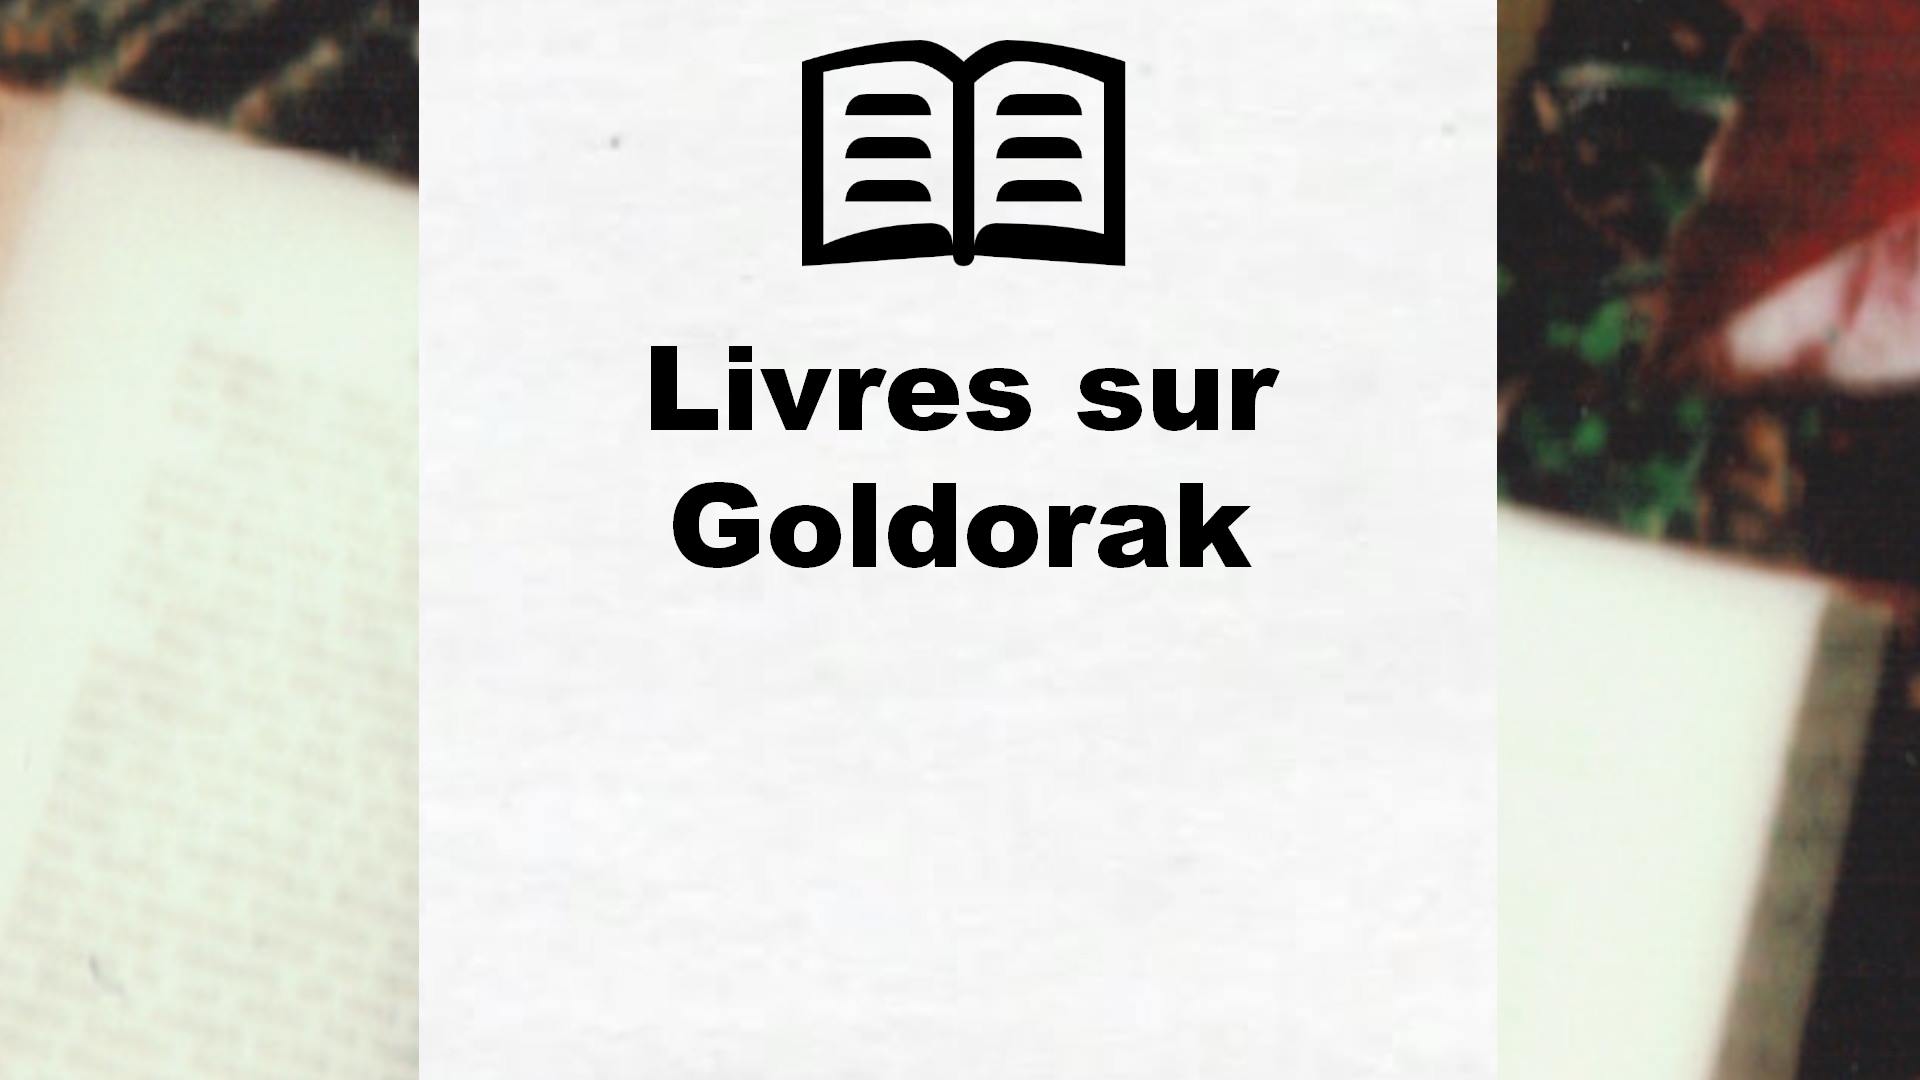 Livres sur Goldorak